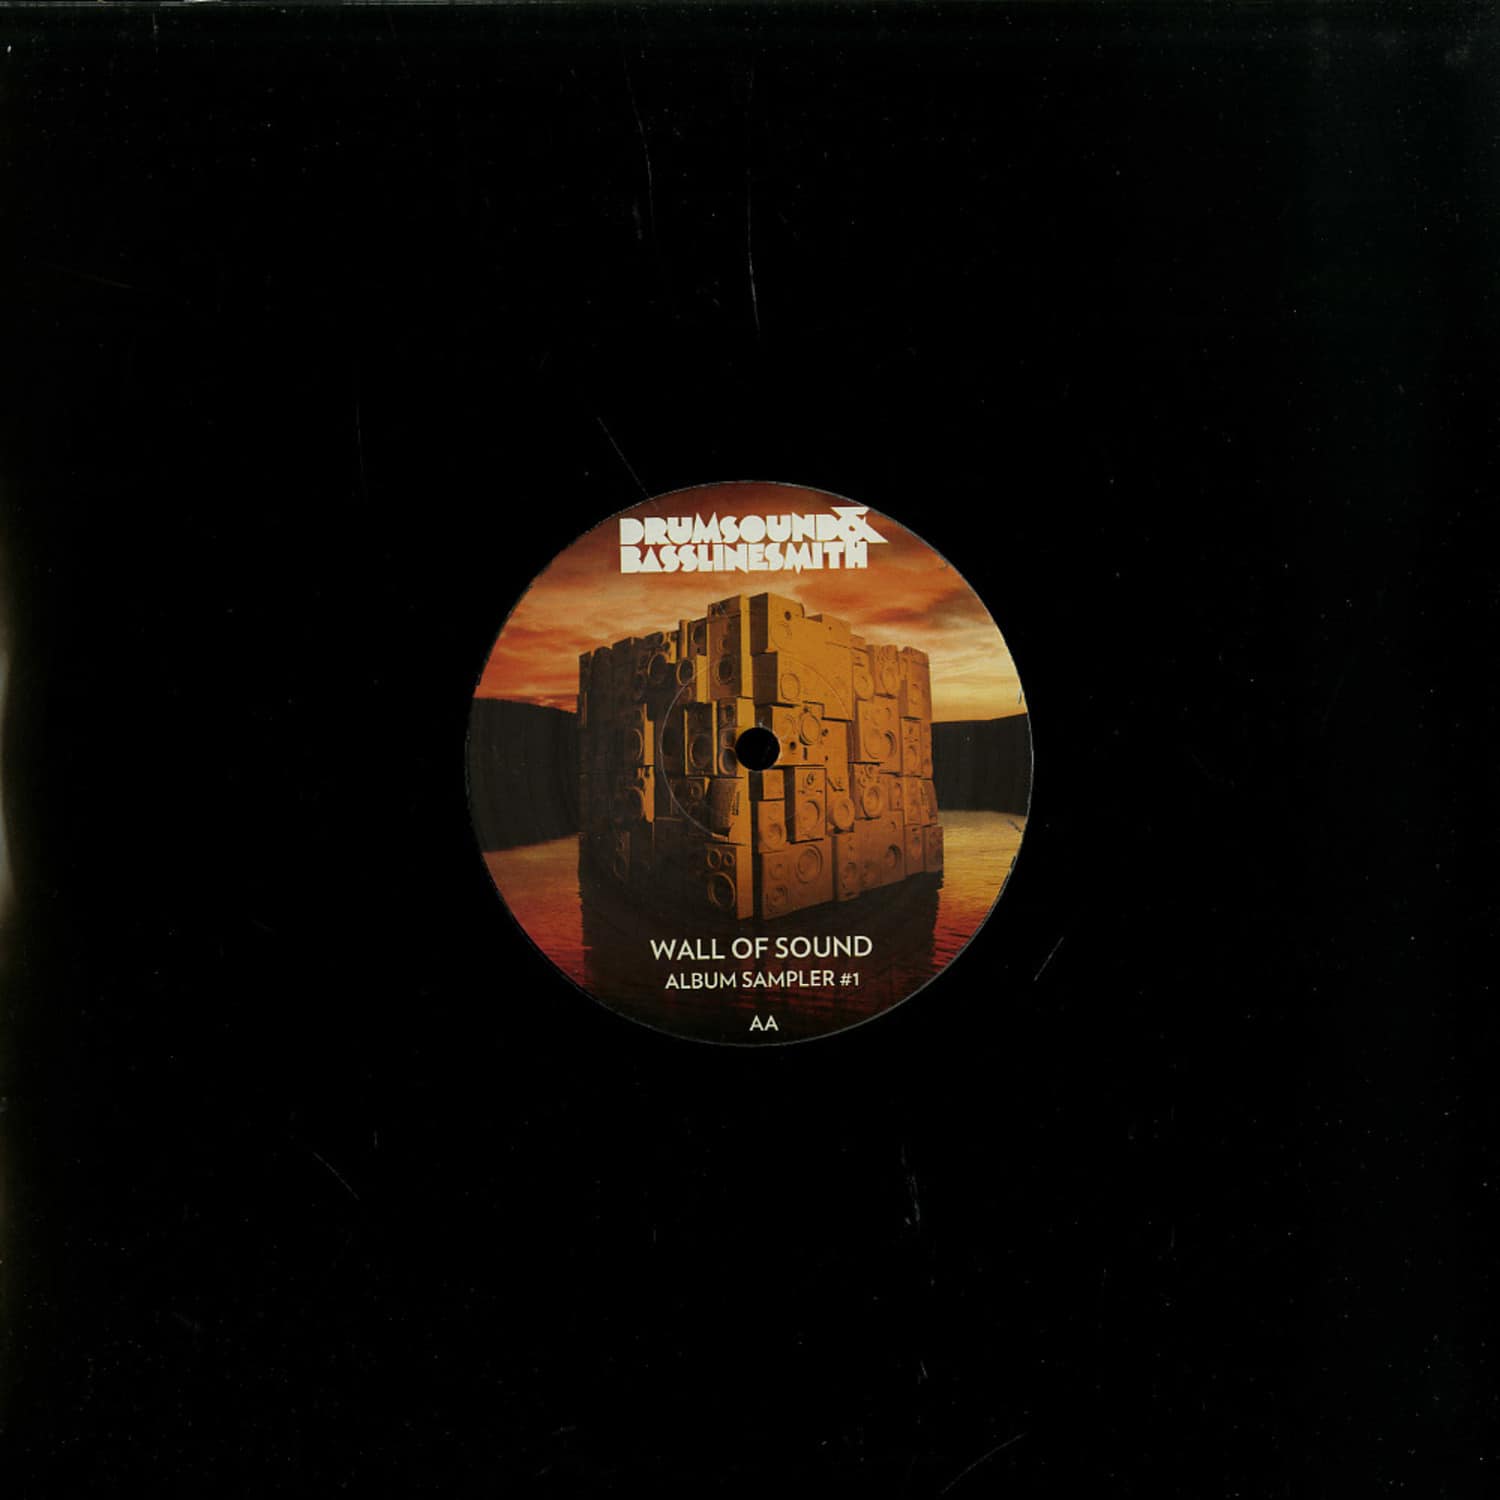 Drumsound & Bassline Smith - WALL OF SOUND ALBUM SAMPLER 1 